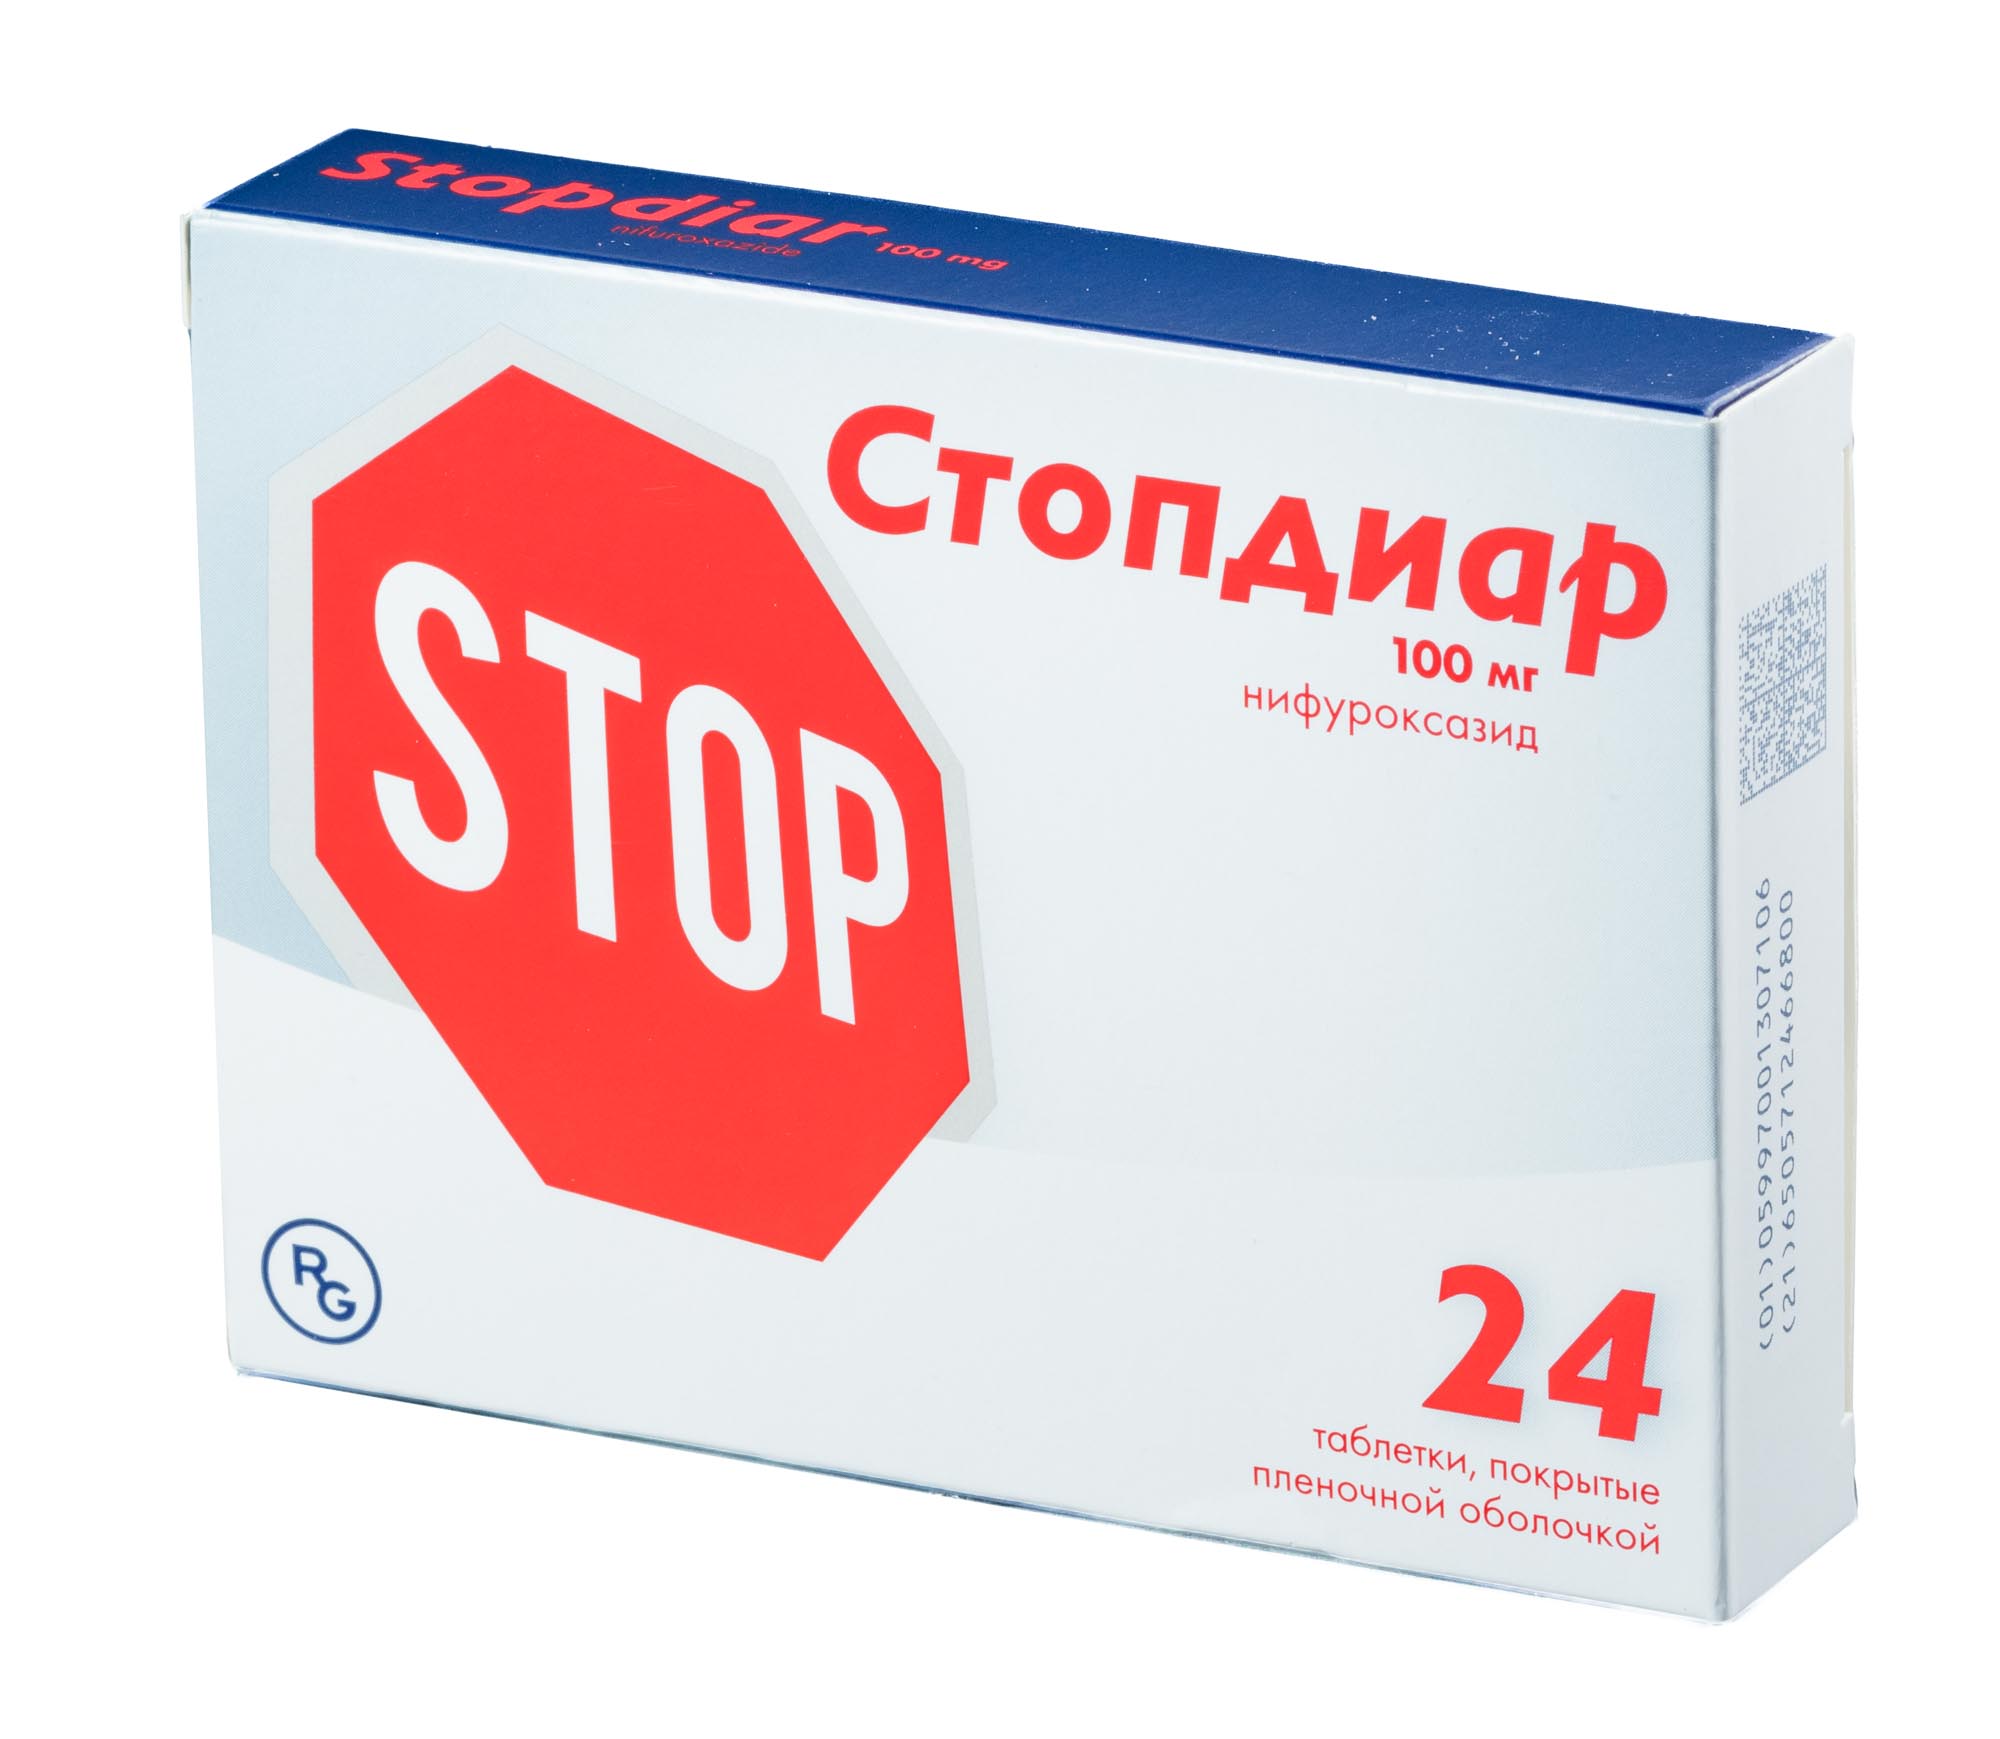 Стопдиар, таблетки покрыт. плен. об. 100 мг, 24 шт. московское гостеприимство